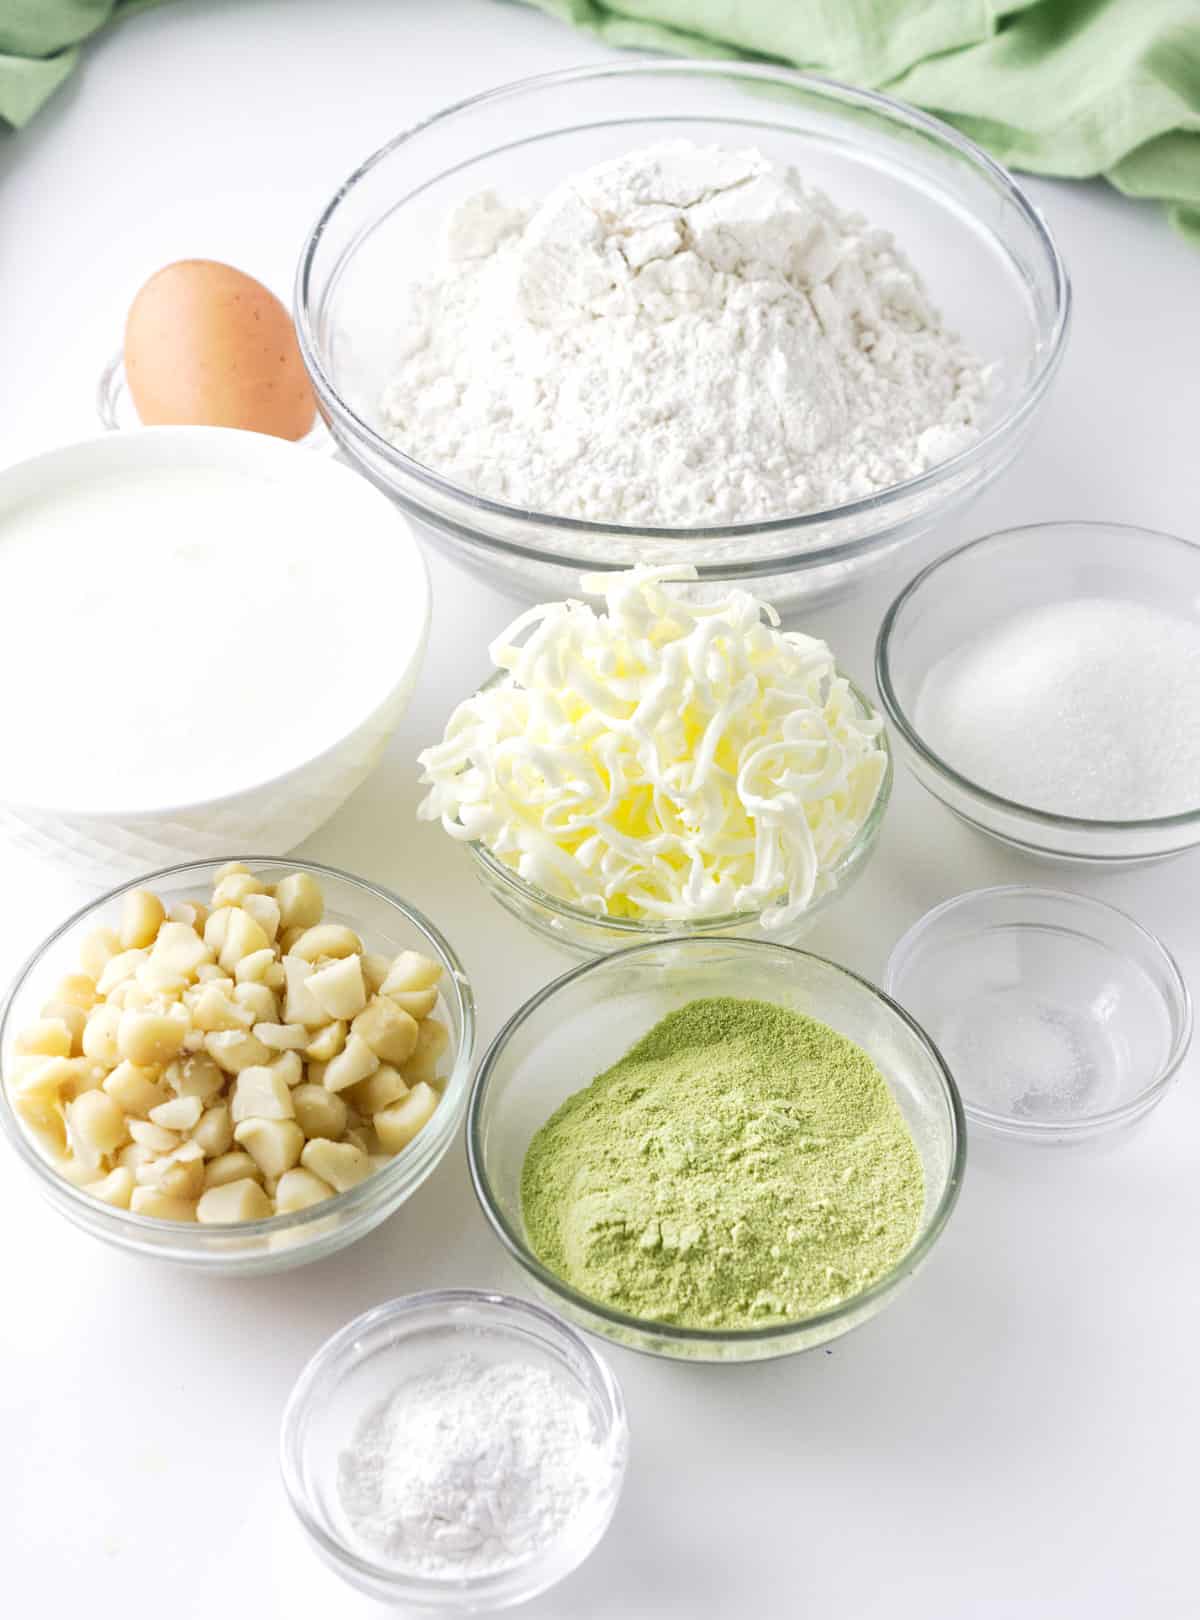 Ingredients for matcha green tea scones.